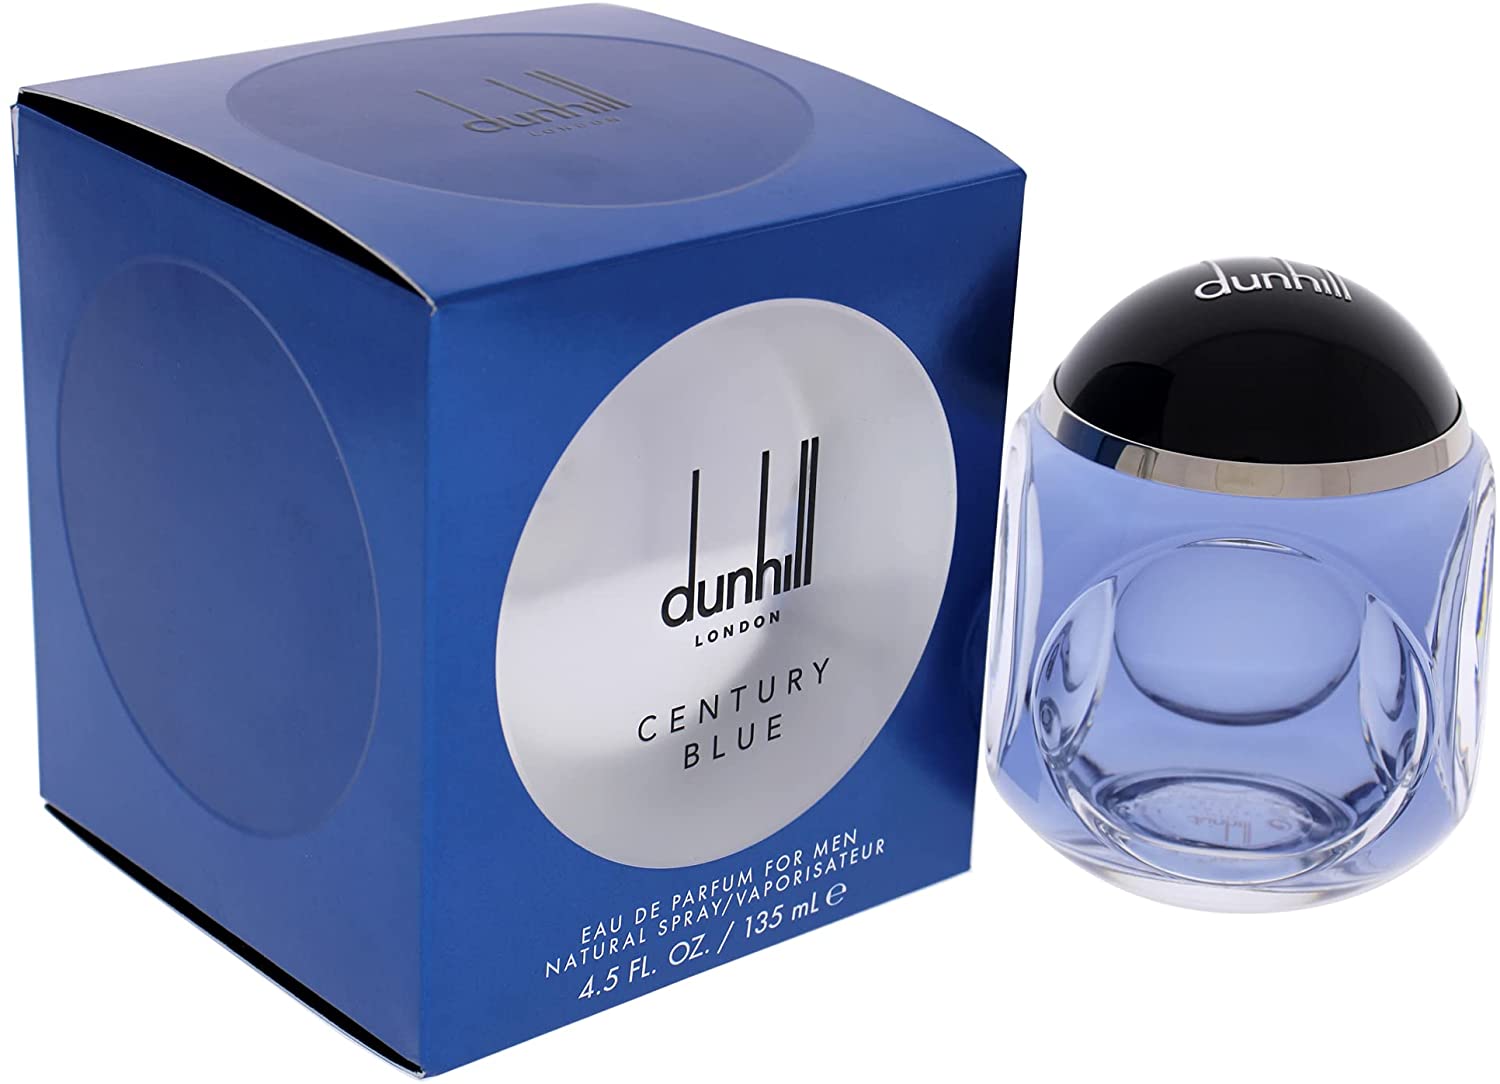 Dunhill Century Blue Men's Eau de Perfume, 135 ml - Buy Online at Best ...